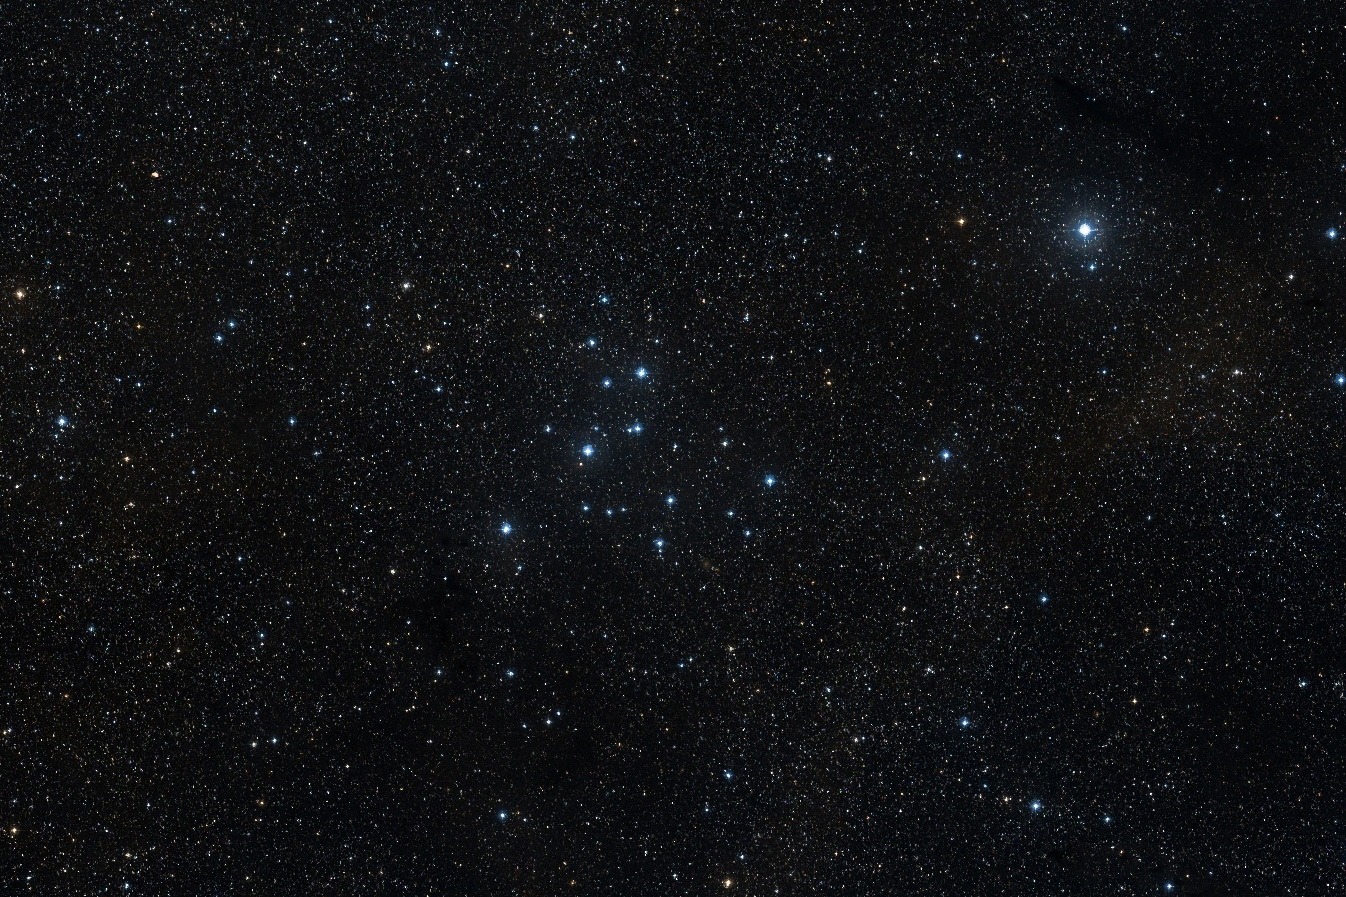 Bläulich-weiß leuchten die hellsten Sterne des offenen Sternhaufens M39